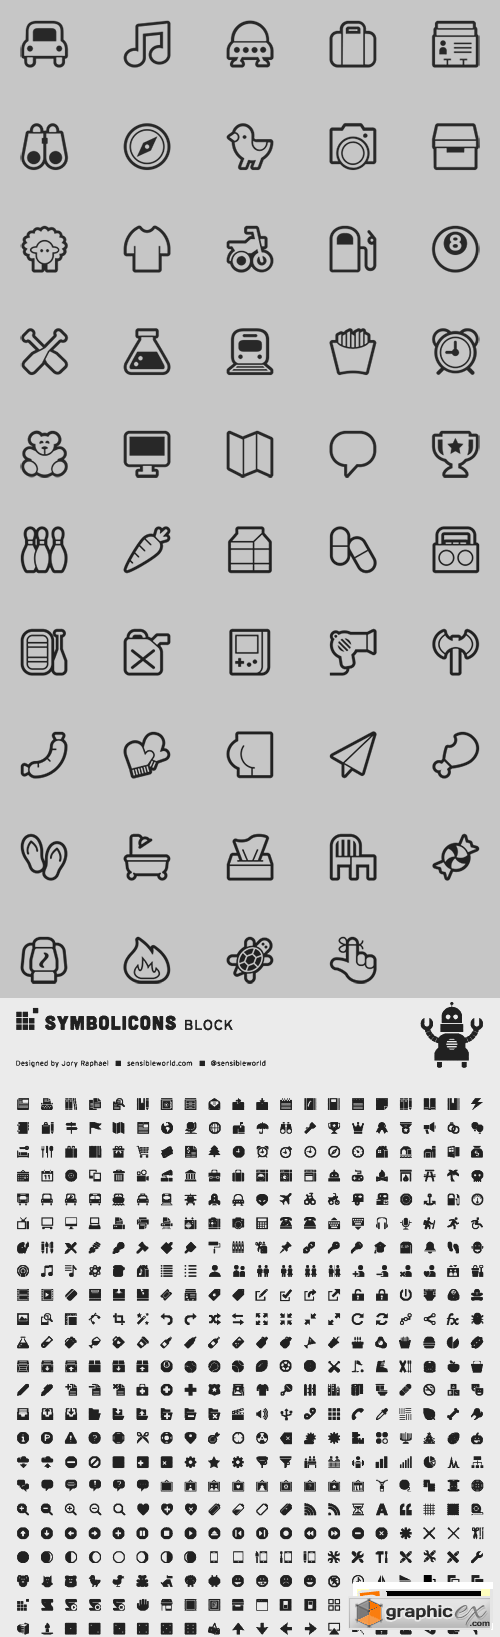 SymbolIcons - Super Megaicons 1000+ Icons